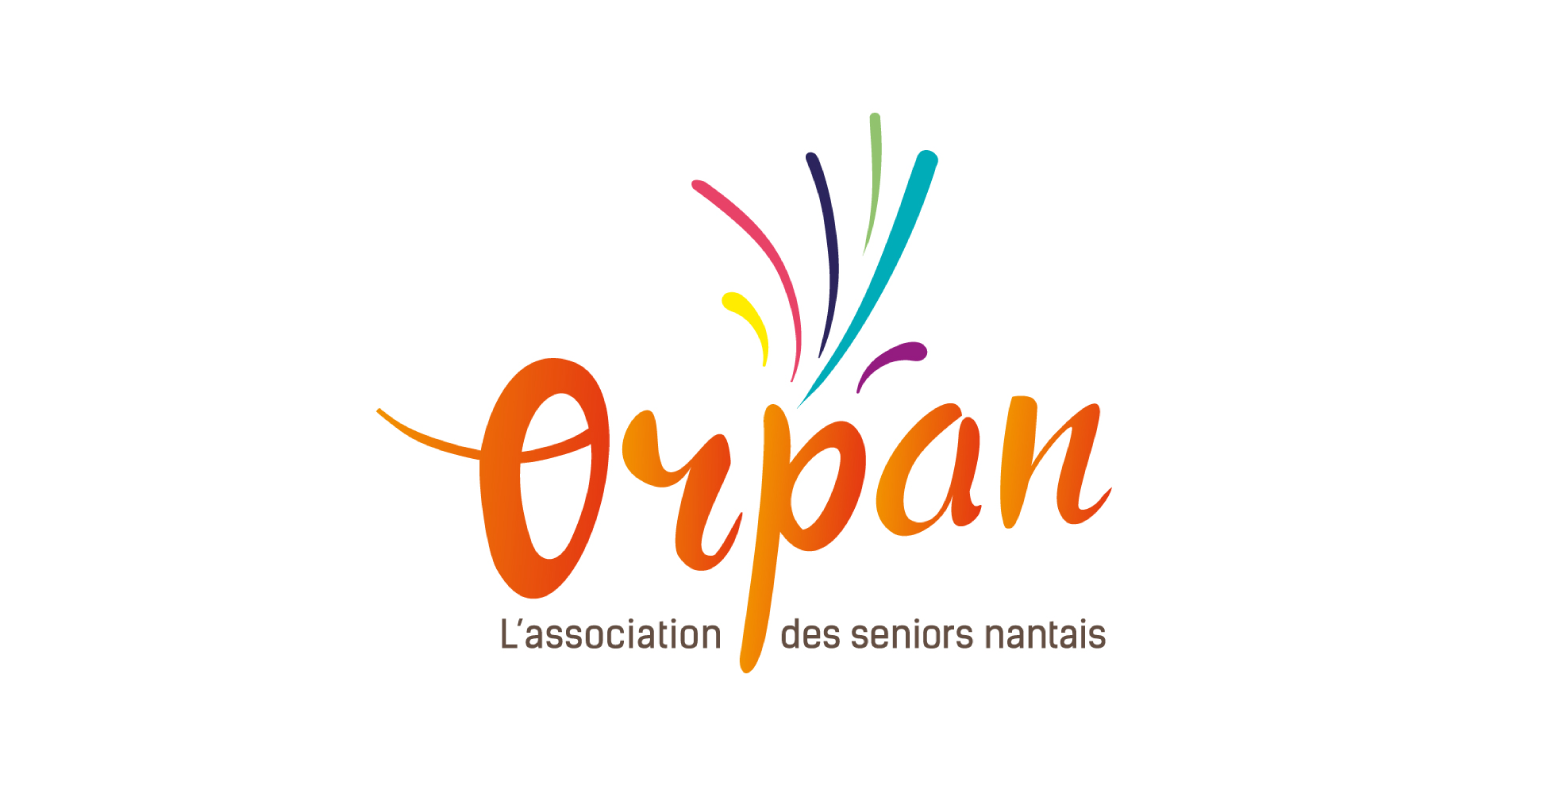 Logo orpan